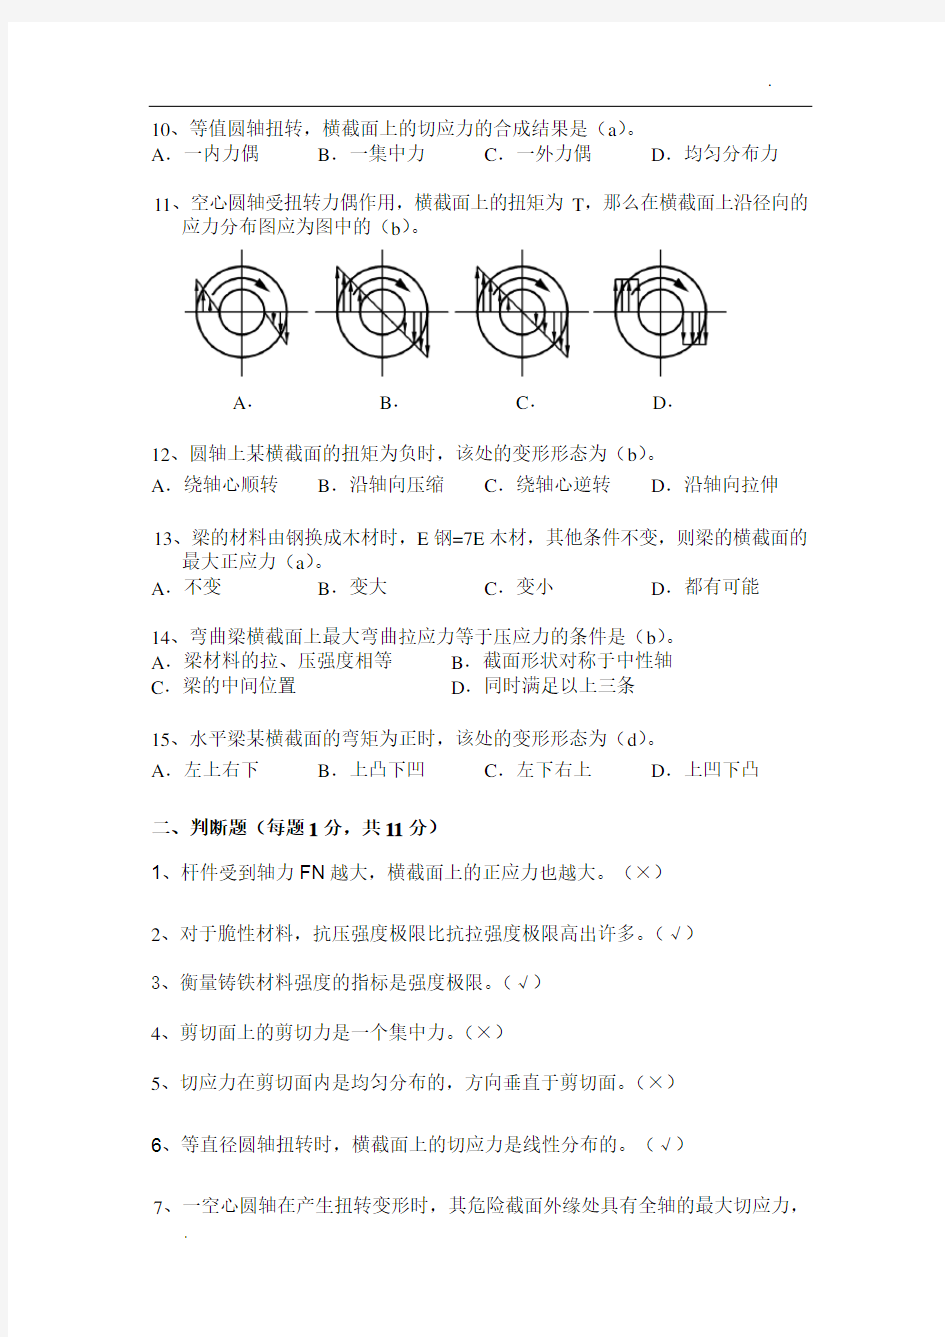 上海电大《机械制造基础》形考作业(二)及答案